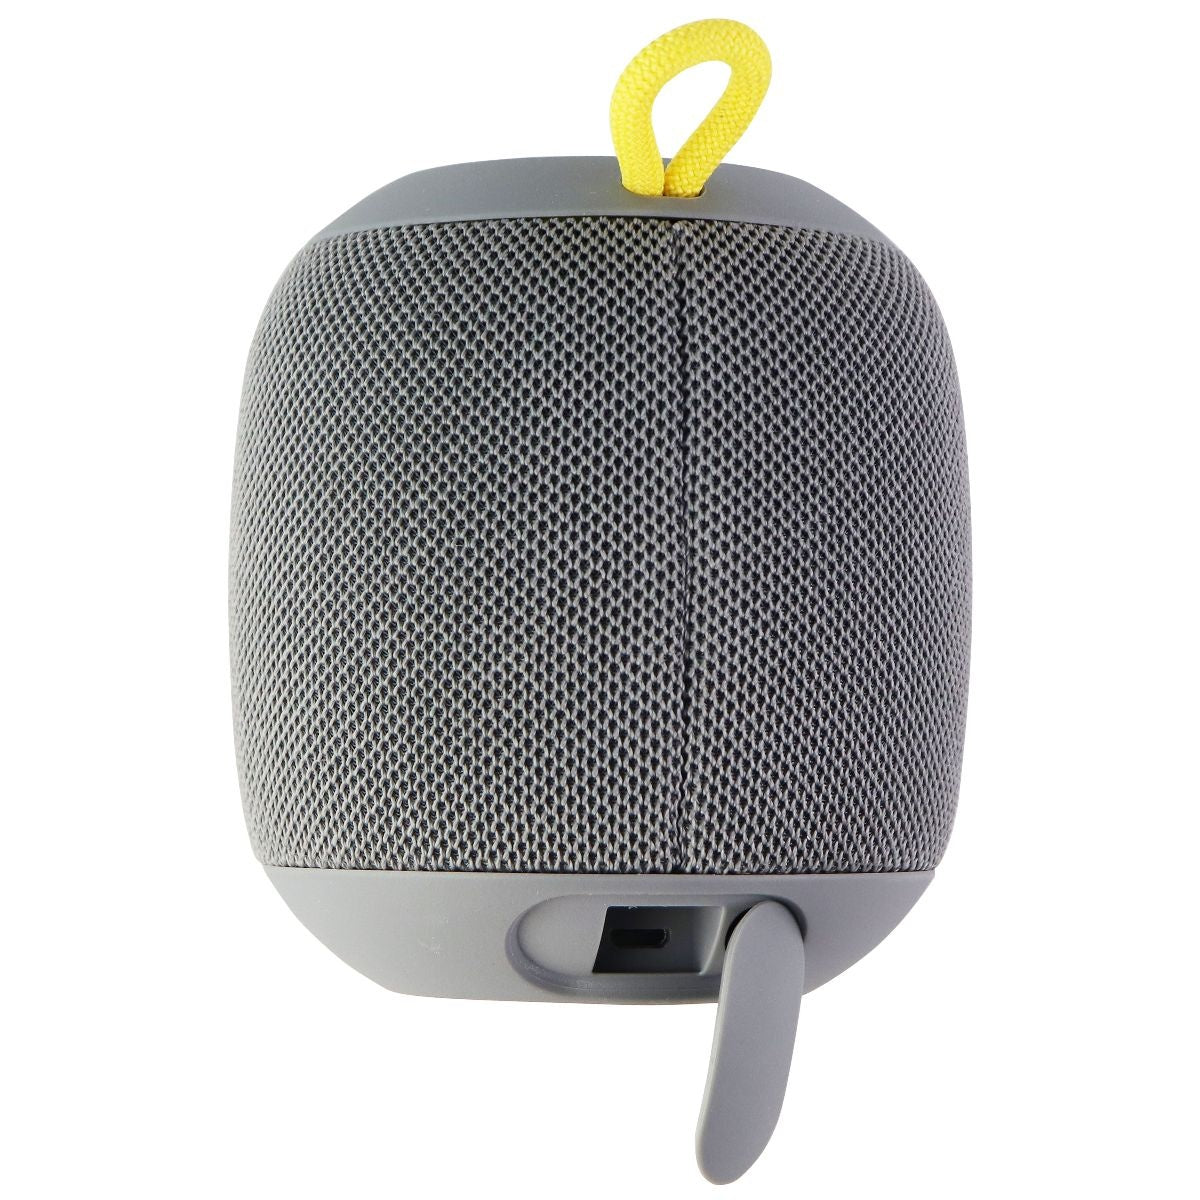 Ultimate Ears WONDERBOOM Portable Waterproof Bluetooth Speaker - Stone Grey Cell Phone - Audio Docks & Speakers Ultimate Ears    - Simple Cell Bulk Wholesale Pricing - USA Seller